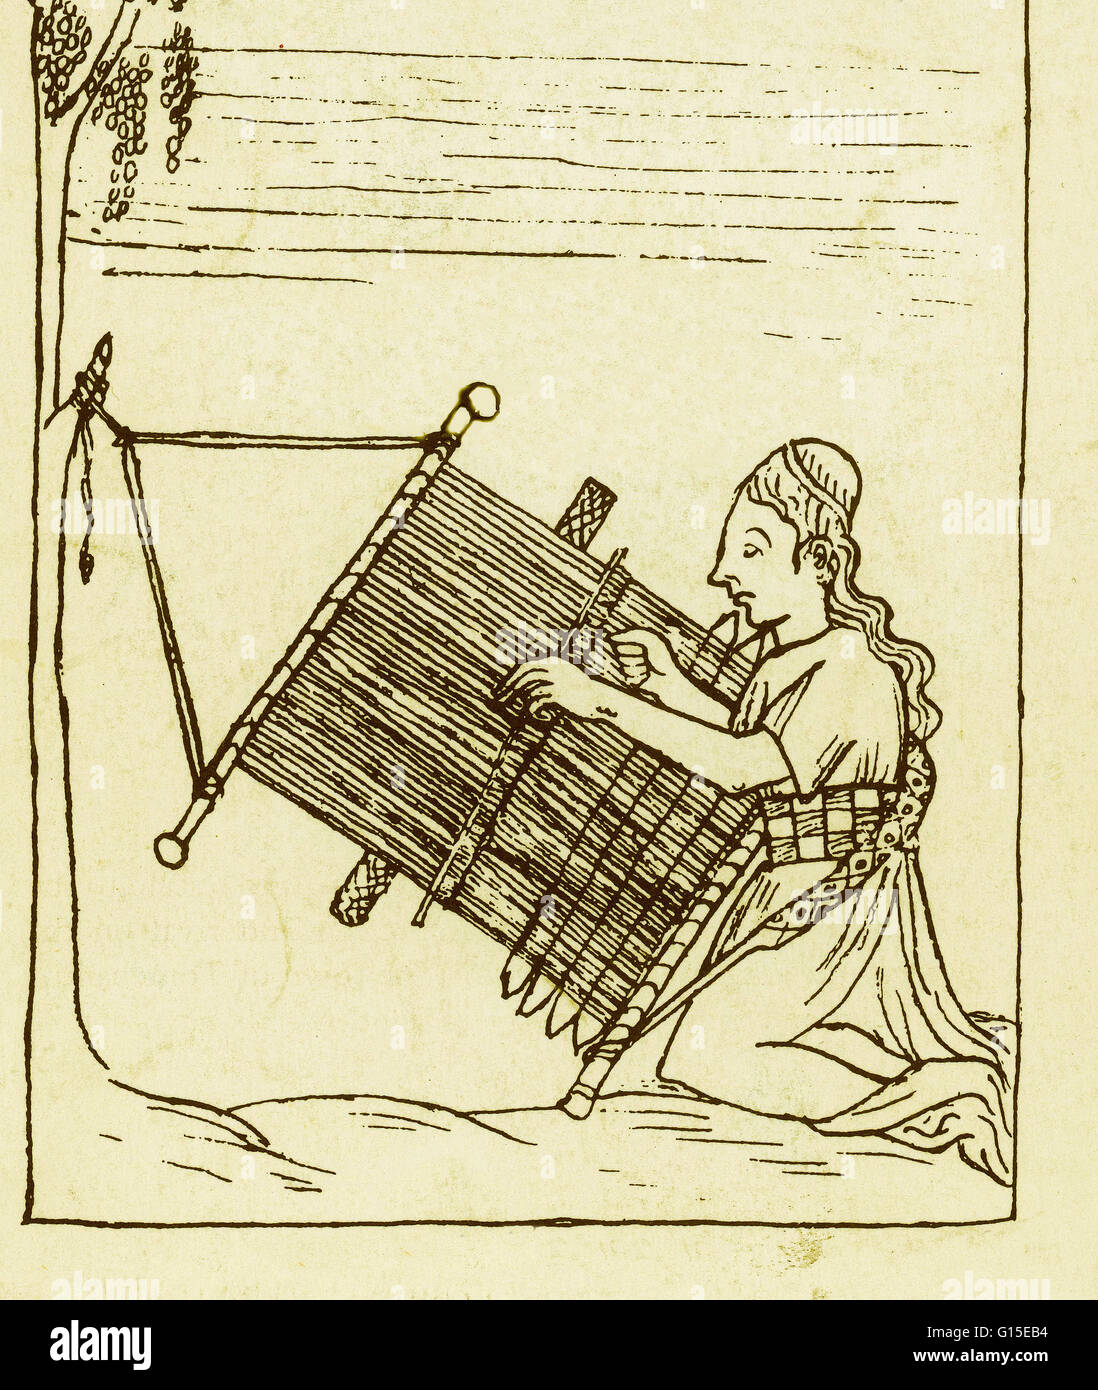 Mujer tejiendo. A partir del codex ilustrado peruano "Nueva coronica y buen gobierno", o "Nueva coronica y buen gobierno", a principios del siglo 17. Escrito e ilustrado por Felipe Guaman Poma de Ayala. Foto de stock